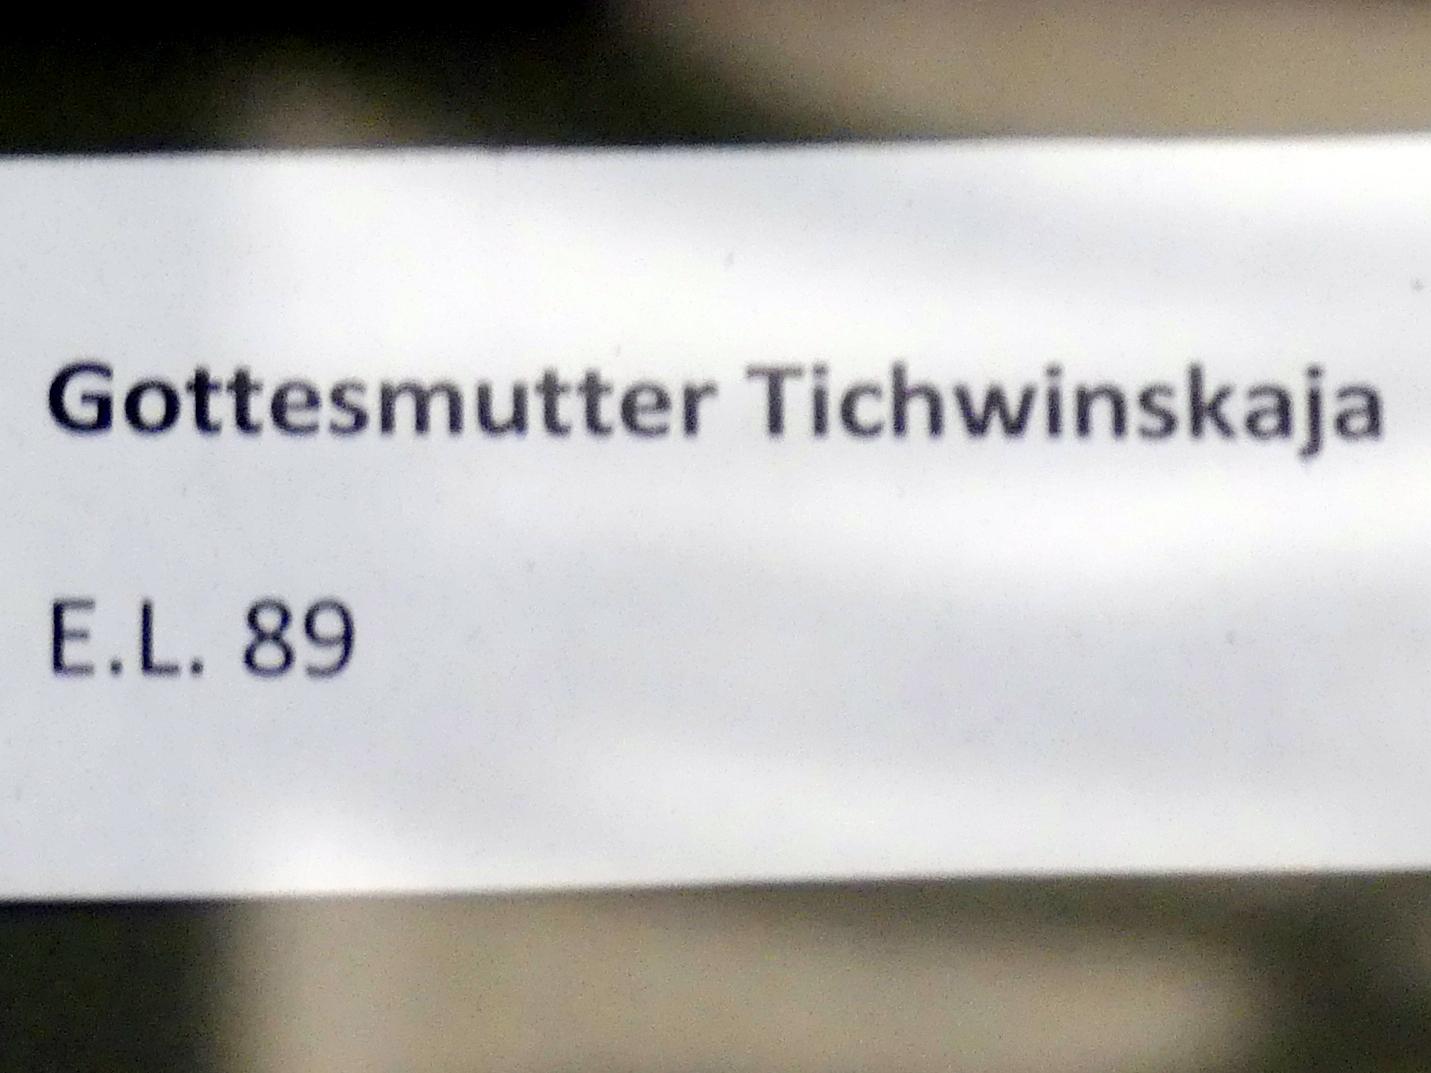 Gottesmutter Tichwinskaja, Frankfurt am Main, Ikonen-Museum, Erdgeschoss, Undatiert, Bild 2/2